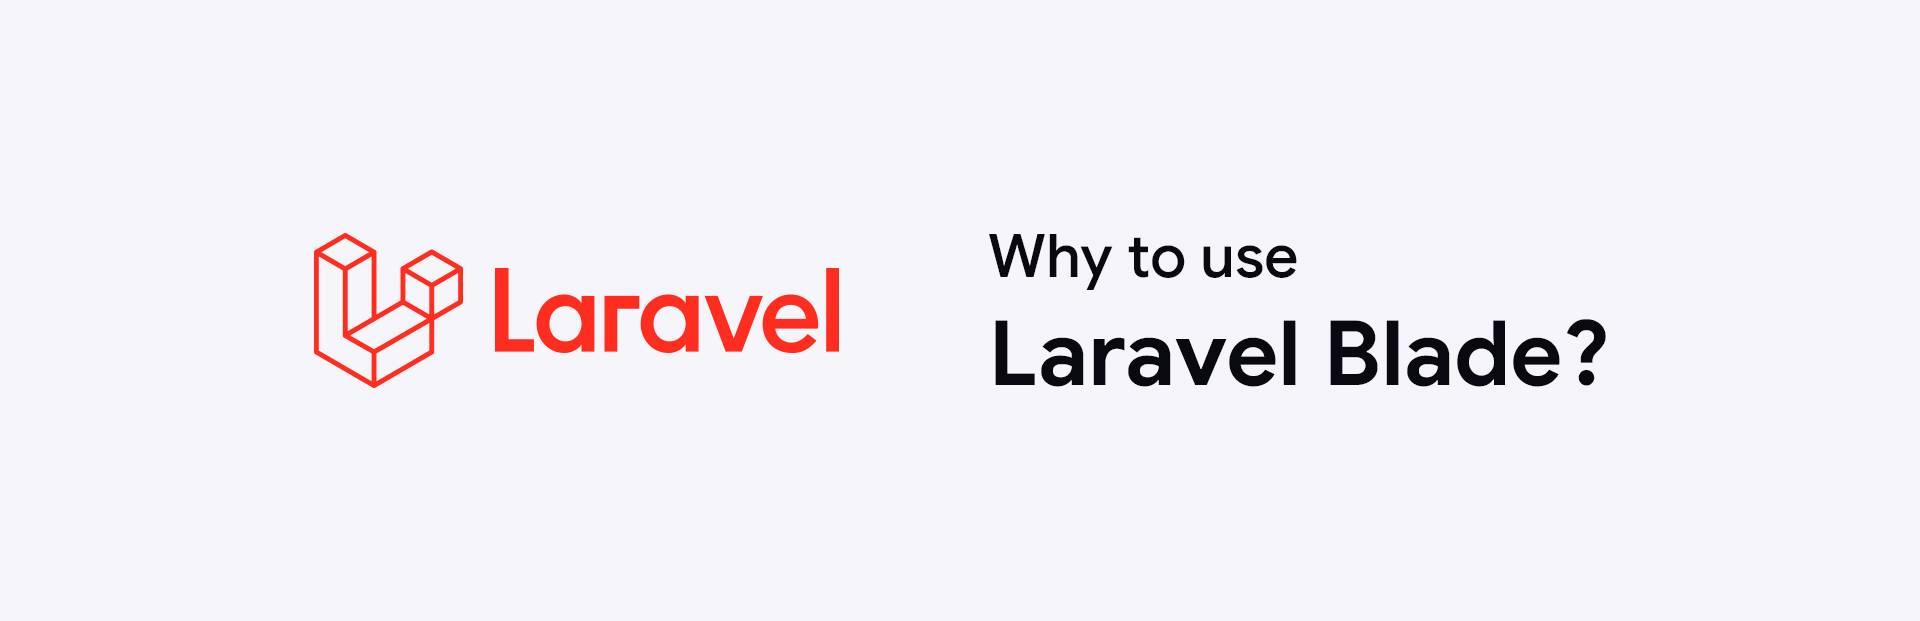 Why use Laravel blade?